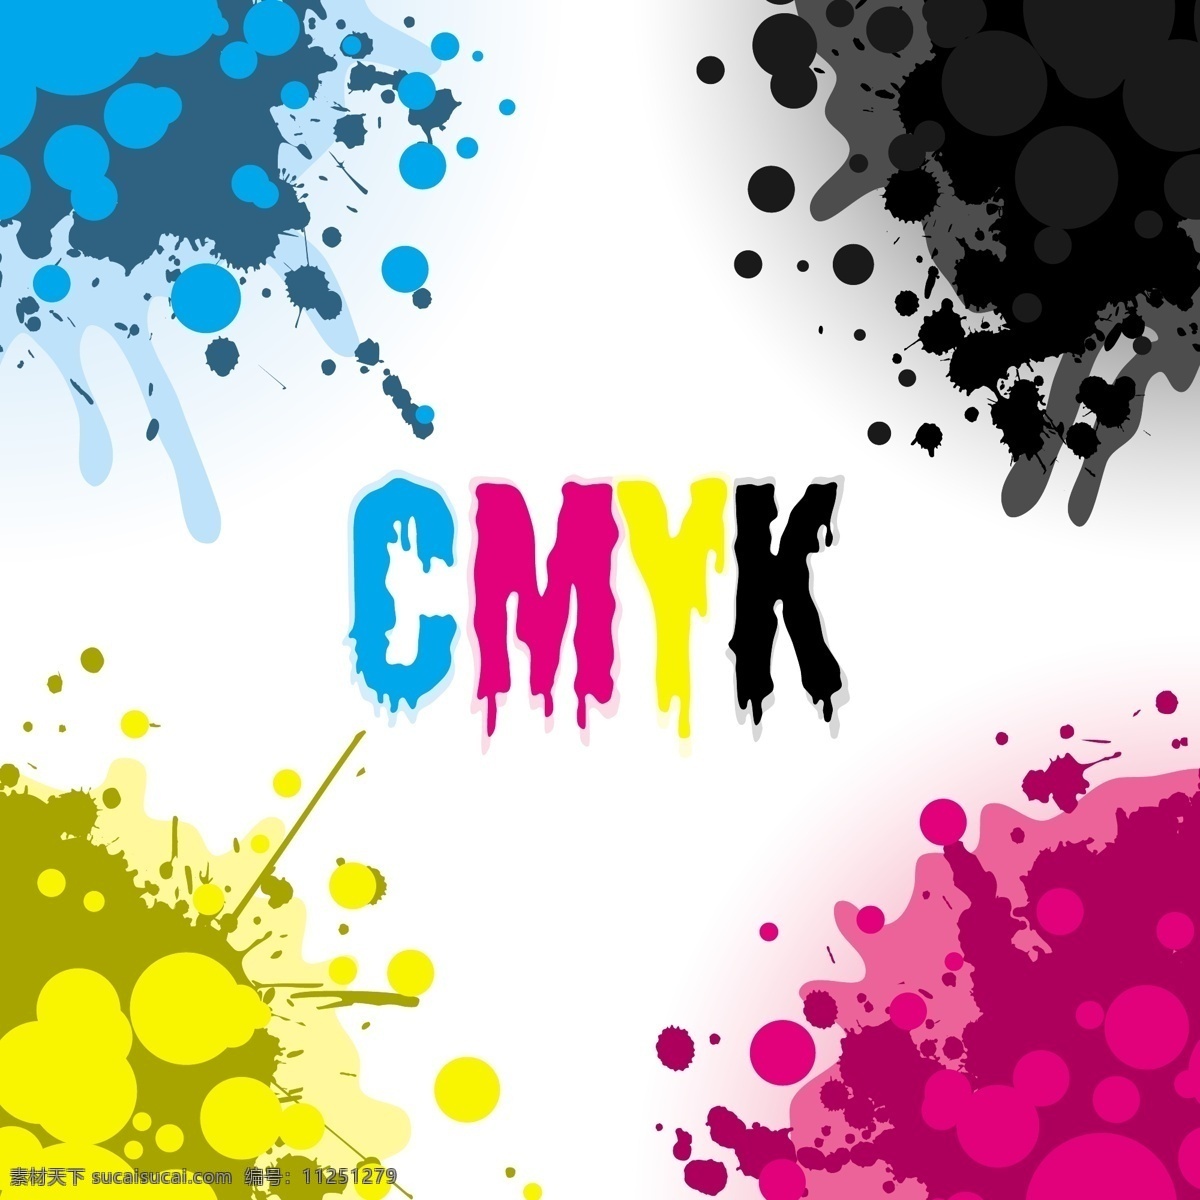 cymk 颜色 喷溅 墨迹 矢量素材 矢量图 其他矢量图